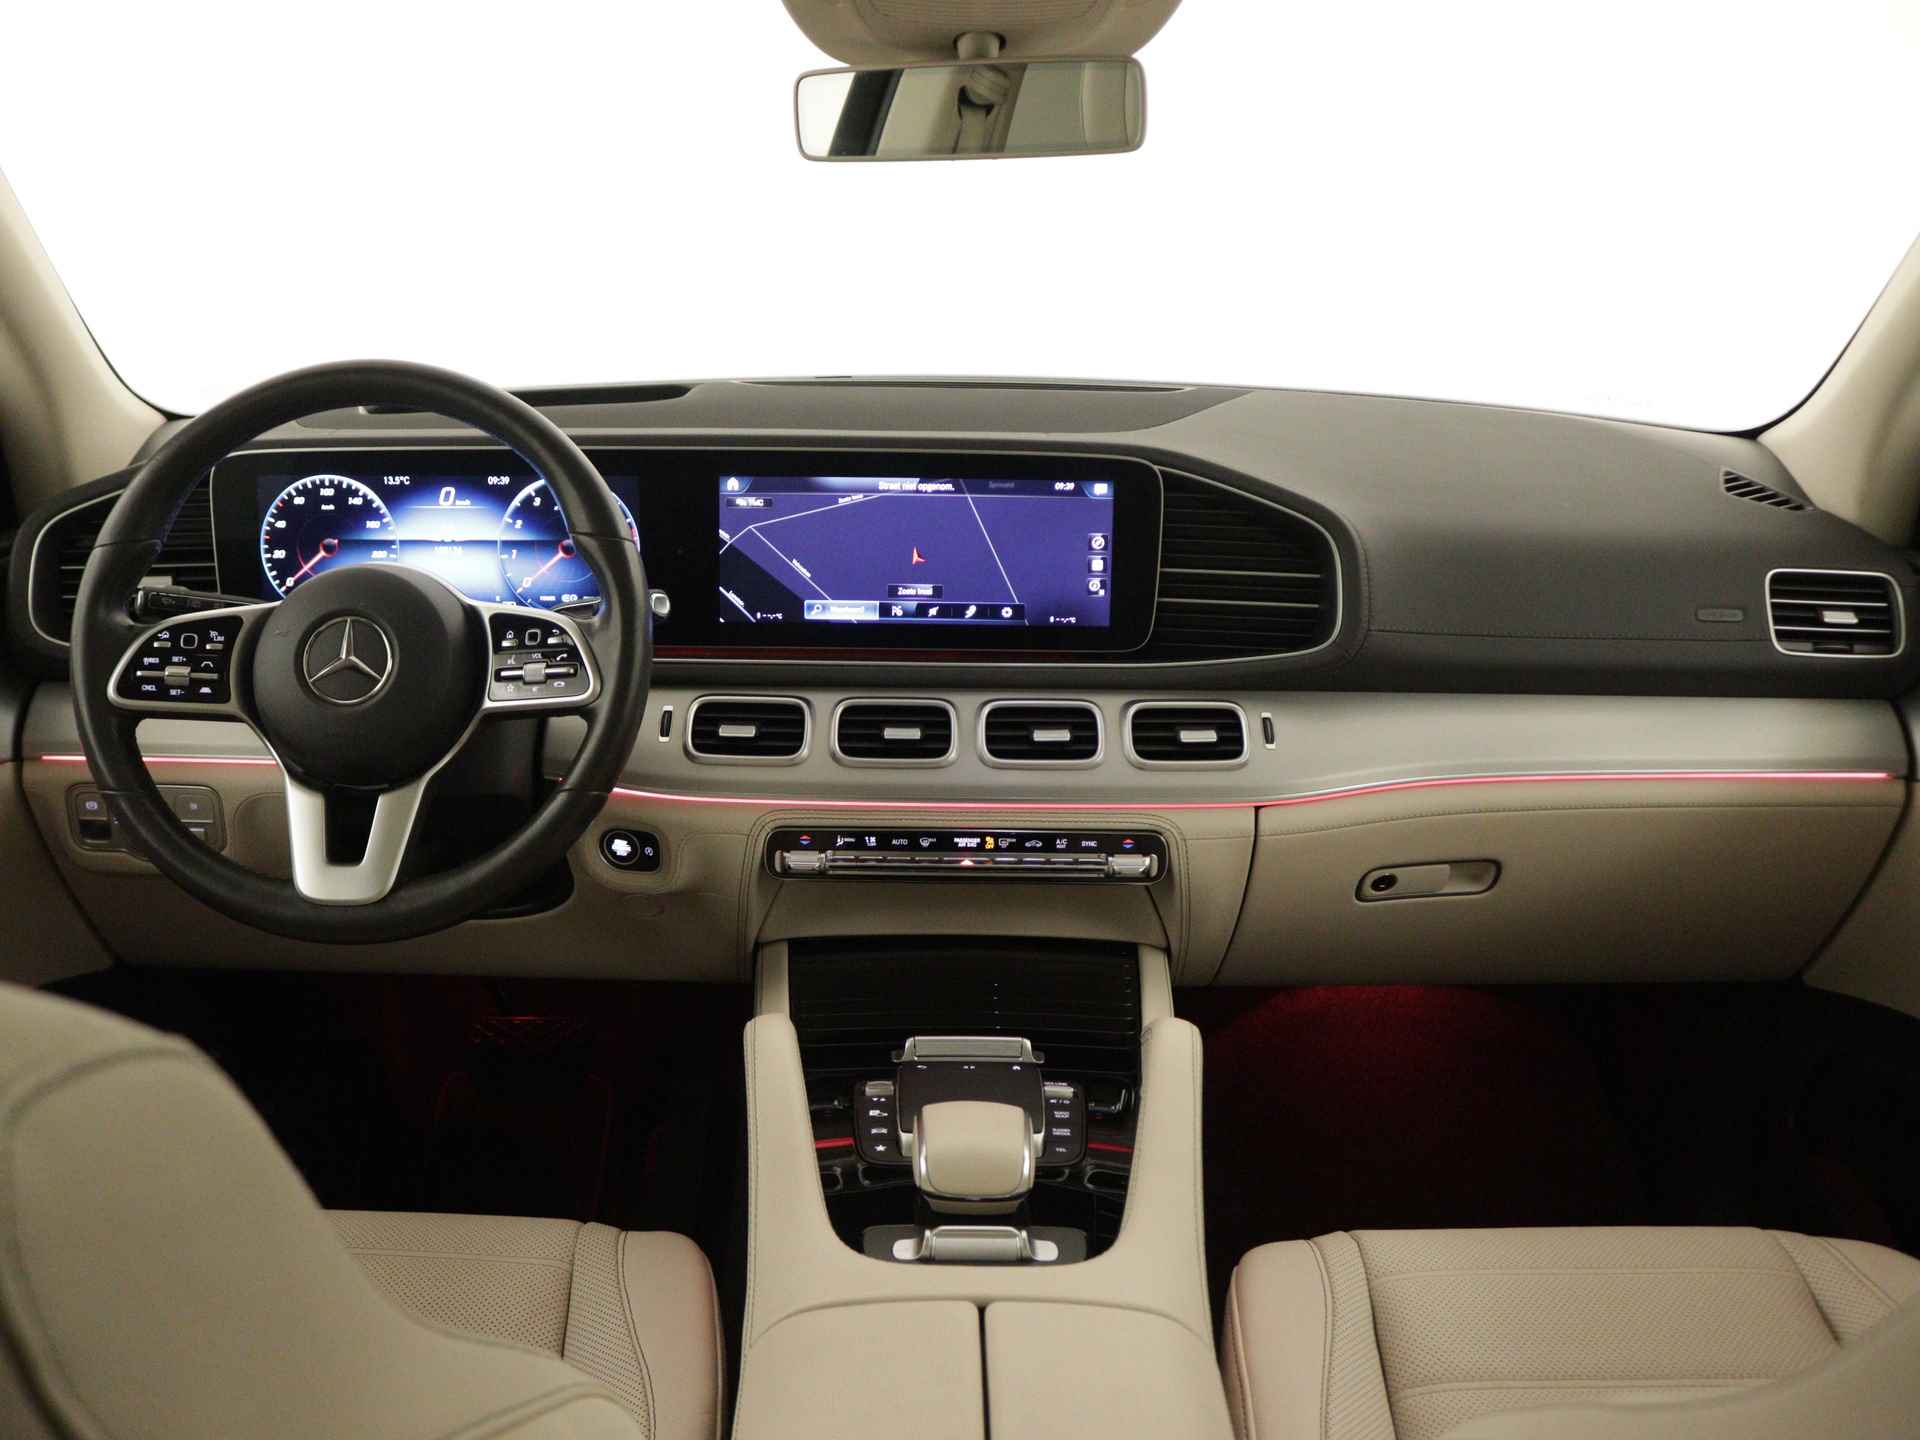 Mercedes-Benz GLE 450 4MATIC AMG Line Premium | Panoramadak | Luchtvering | Burmester | Navigatie | MBUX wide screen | Alarm klasse 3 | Parking support | inclusief 24 maanden MB Certified garantie voor europa - 5/39